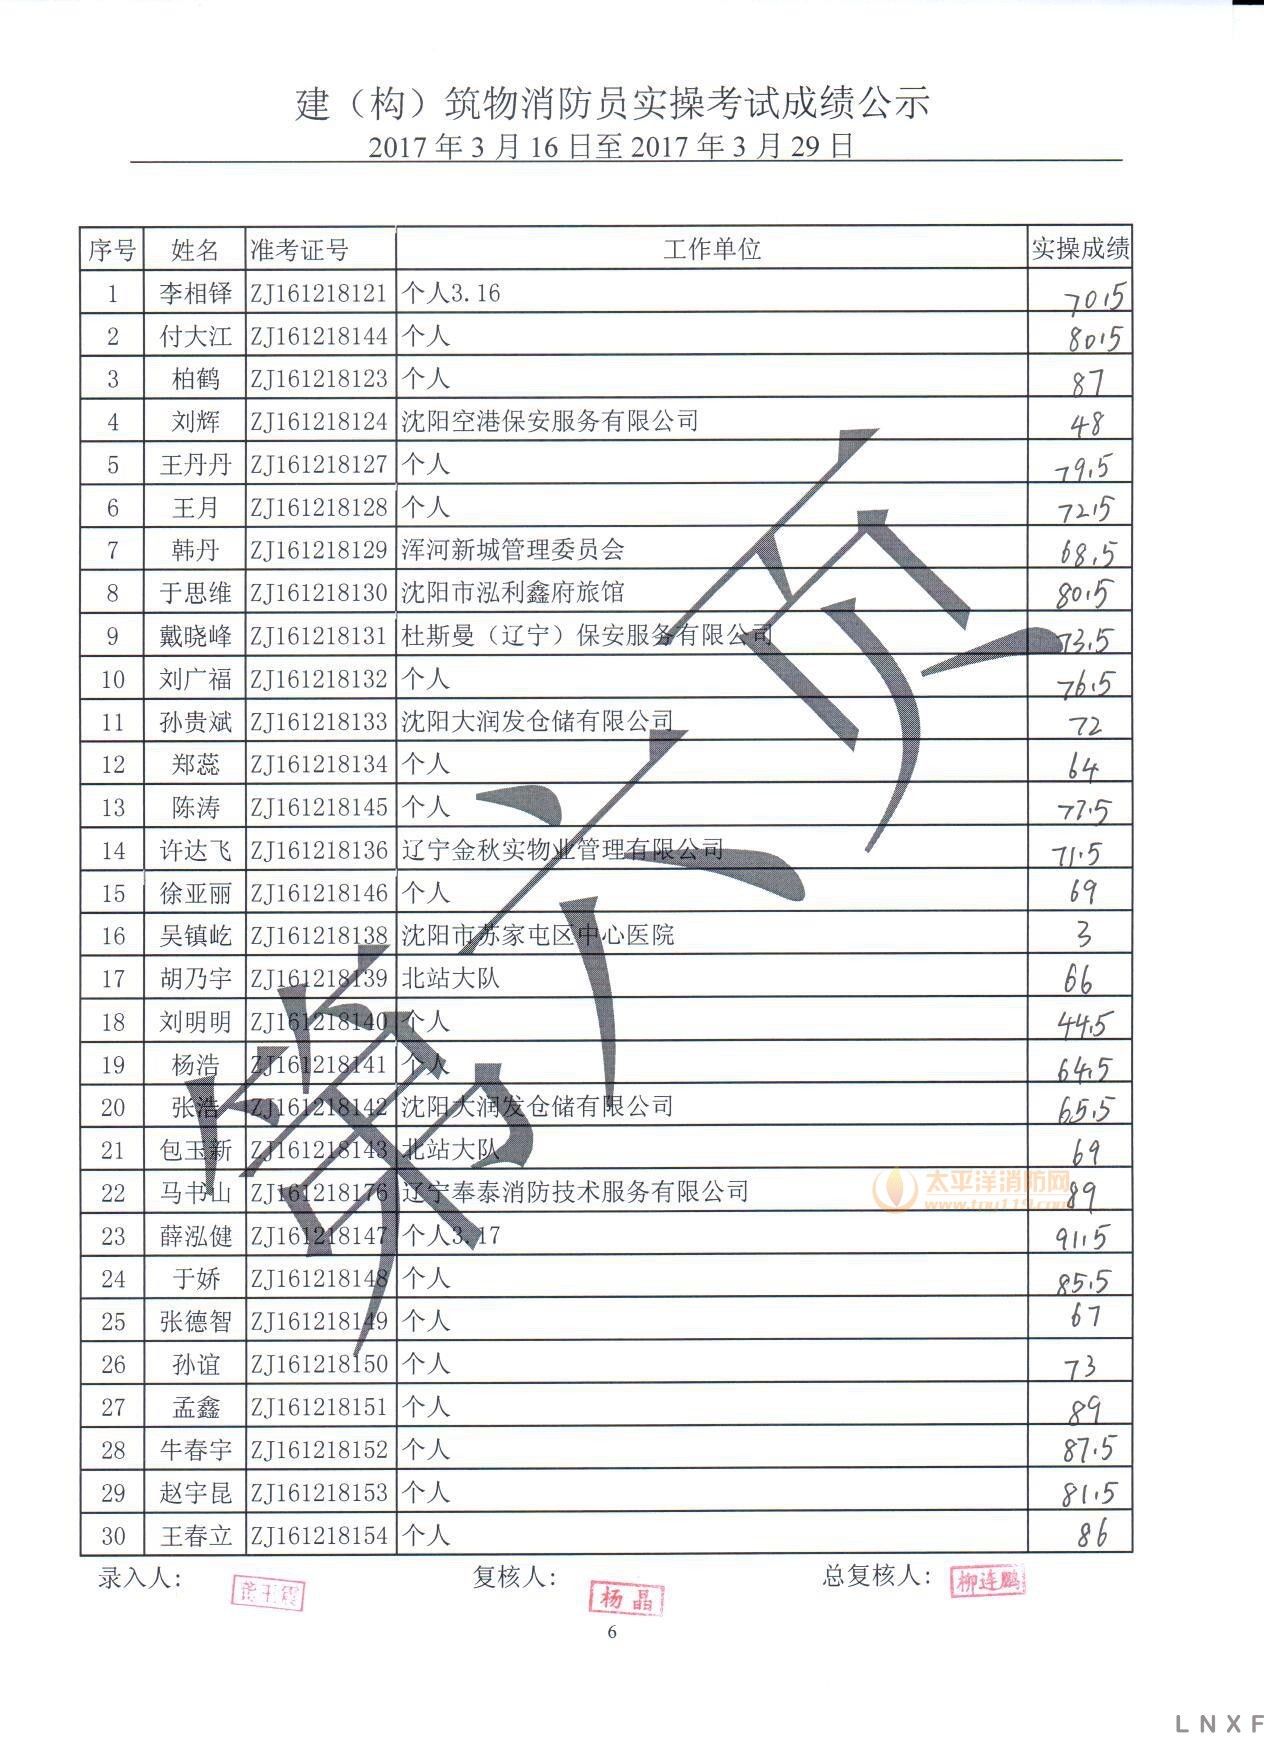 辽宁2017年建构筑物消防员（3.16-03.29）实操考试成绩公示